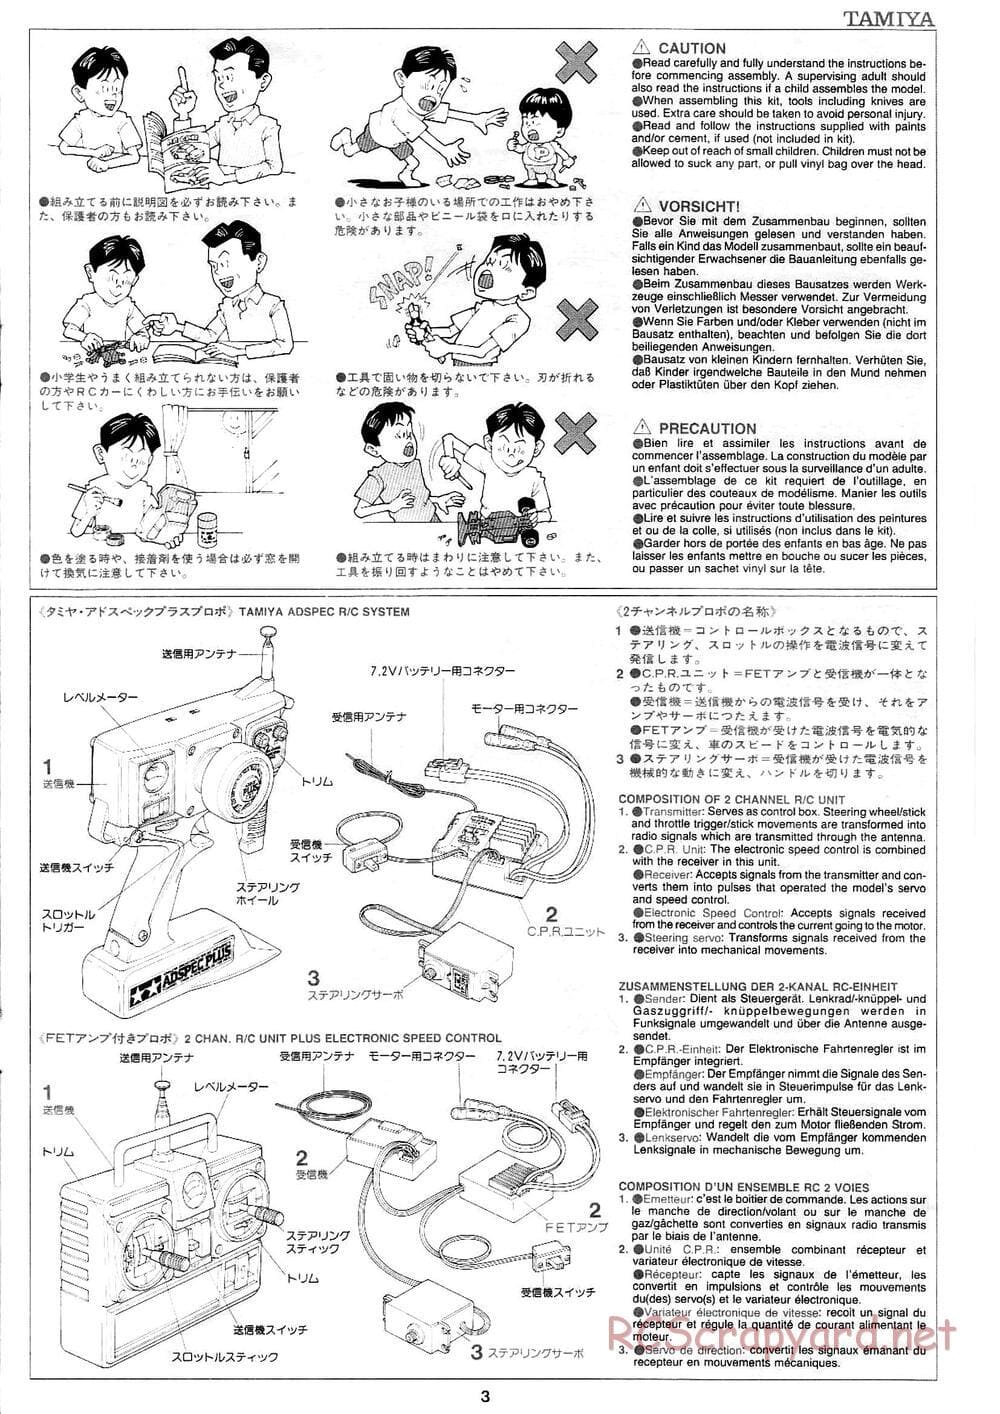 Tamiya - Mad Bull Chassis - Manual - Page 3